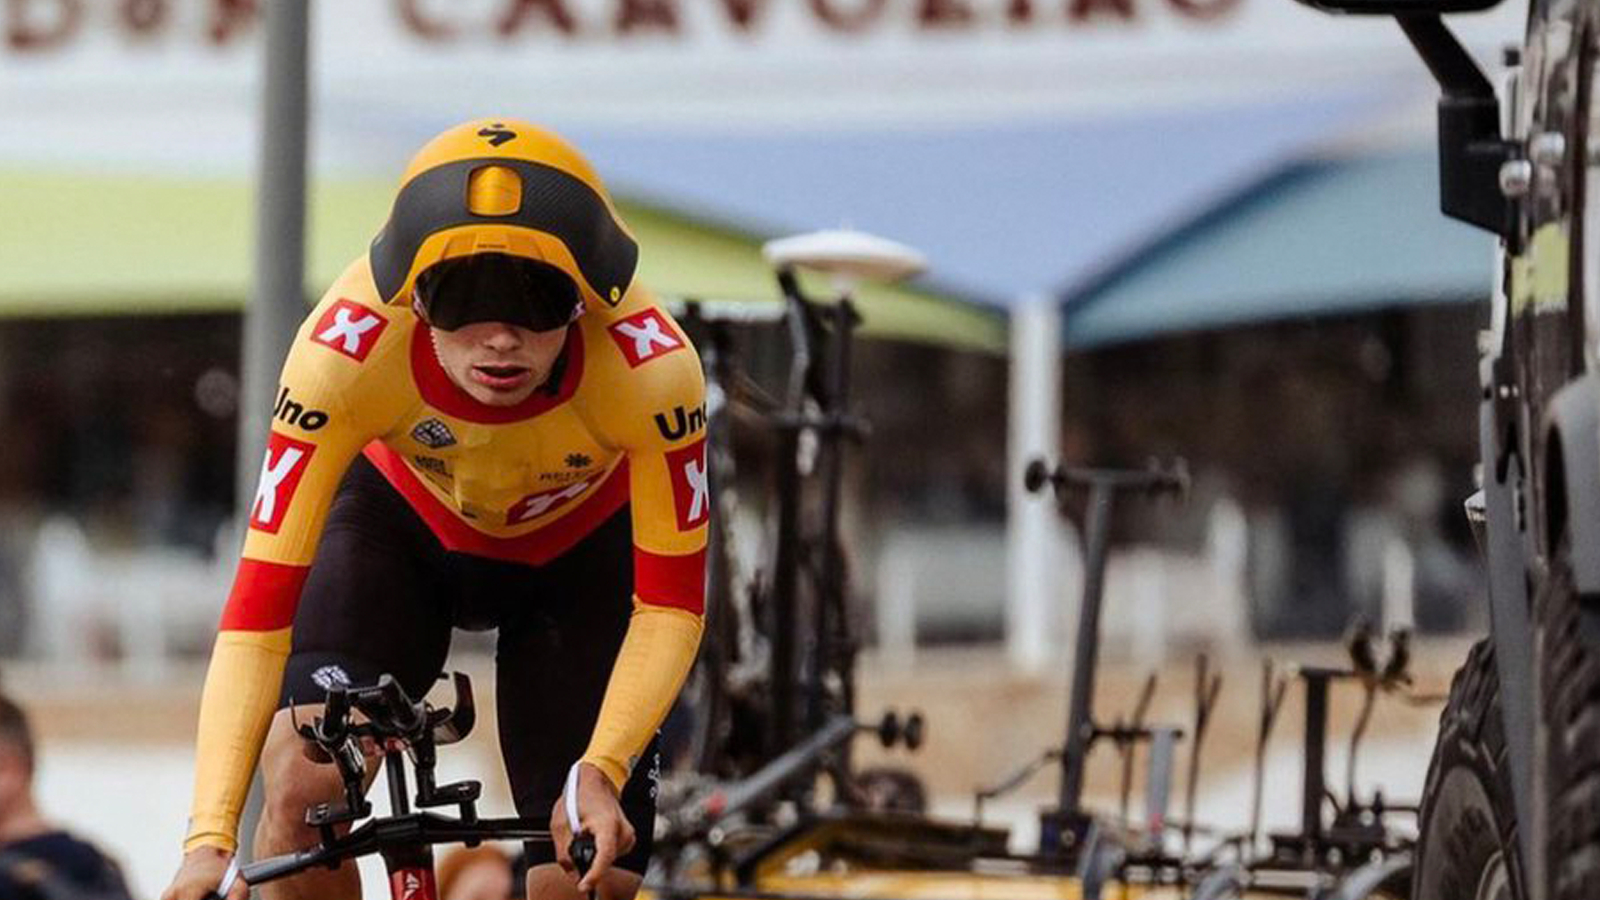 Wild new UnoX TT helmet is unlike anything we've seen Cyclingnews